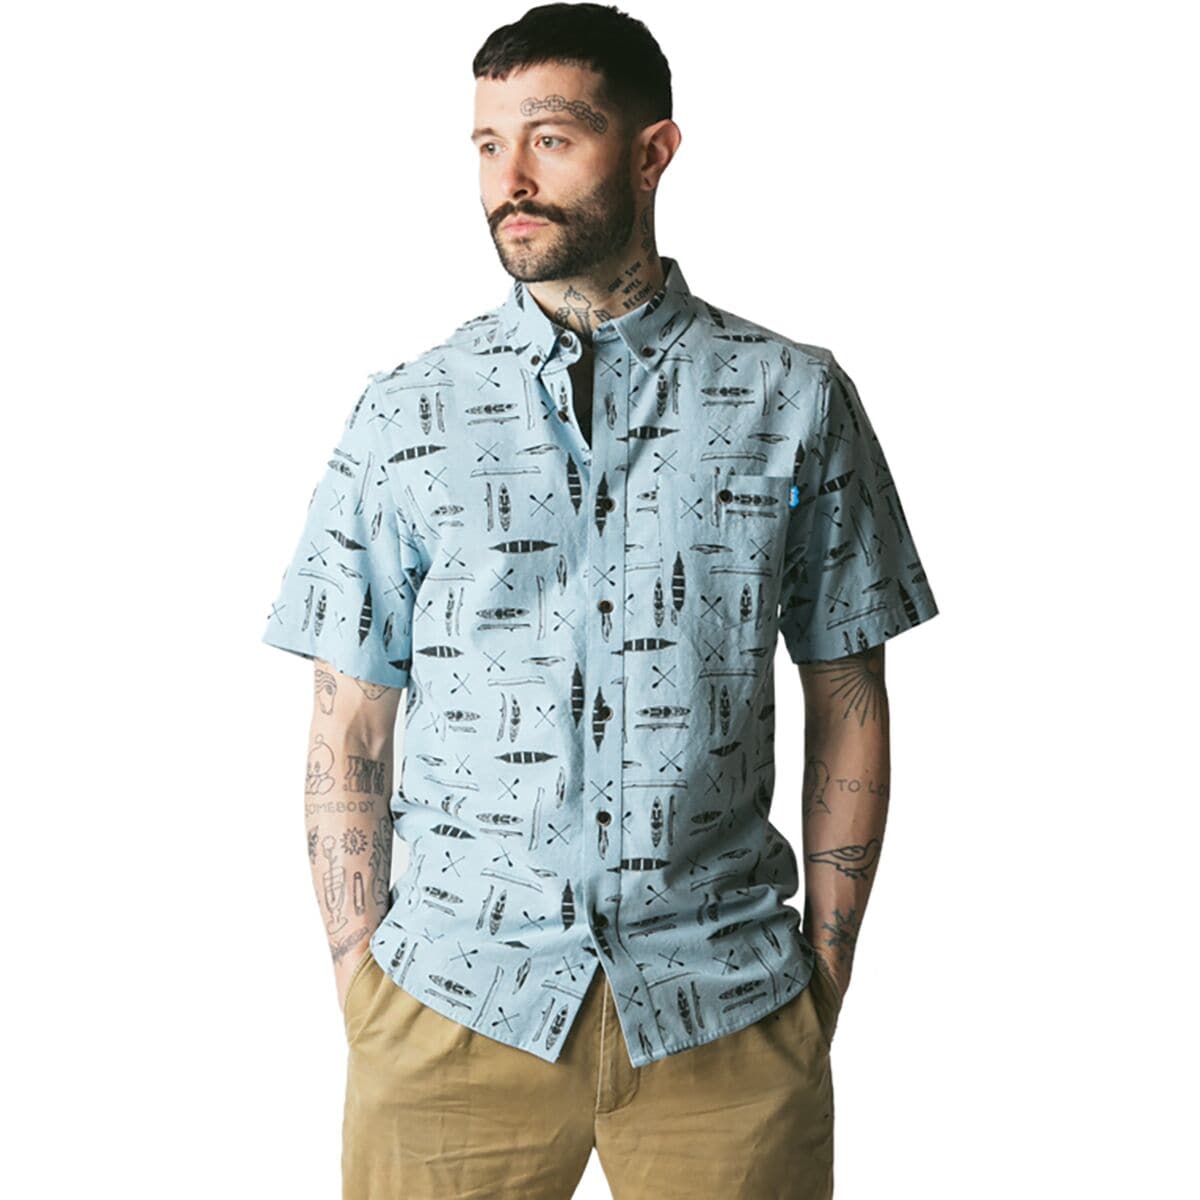 Juan Short-Sleeve Shirt - Men